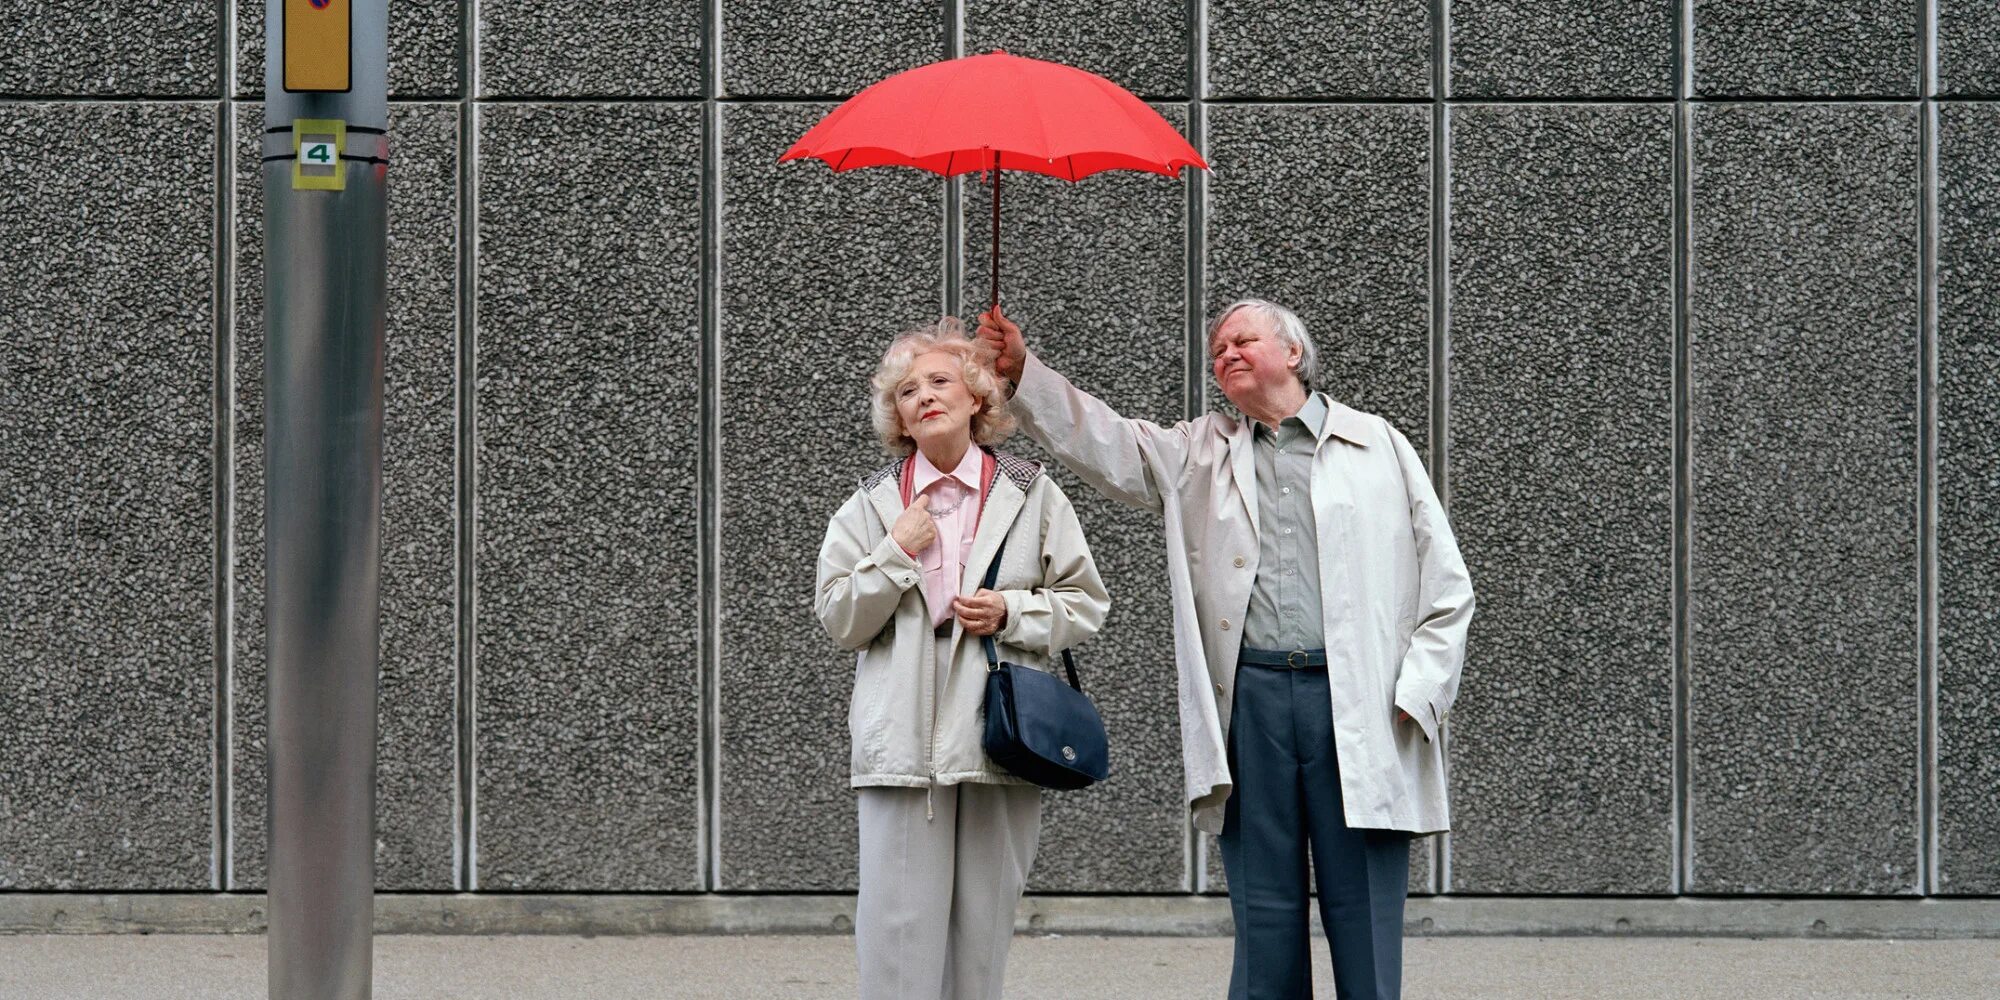 Помощь другим фото. Бескорыстный человек. Держит зонт над. Альтруист фото. Мужчина держит зонтик над женщиной.